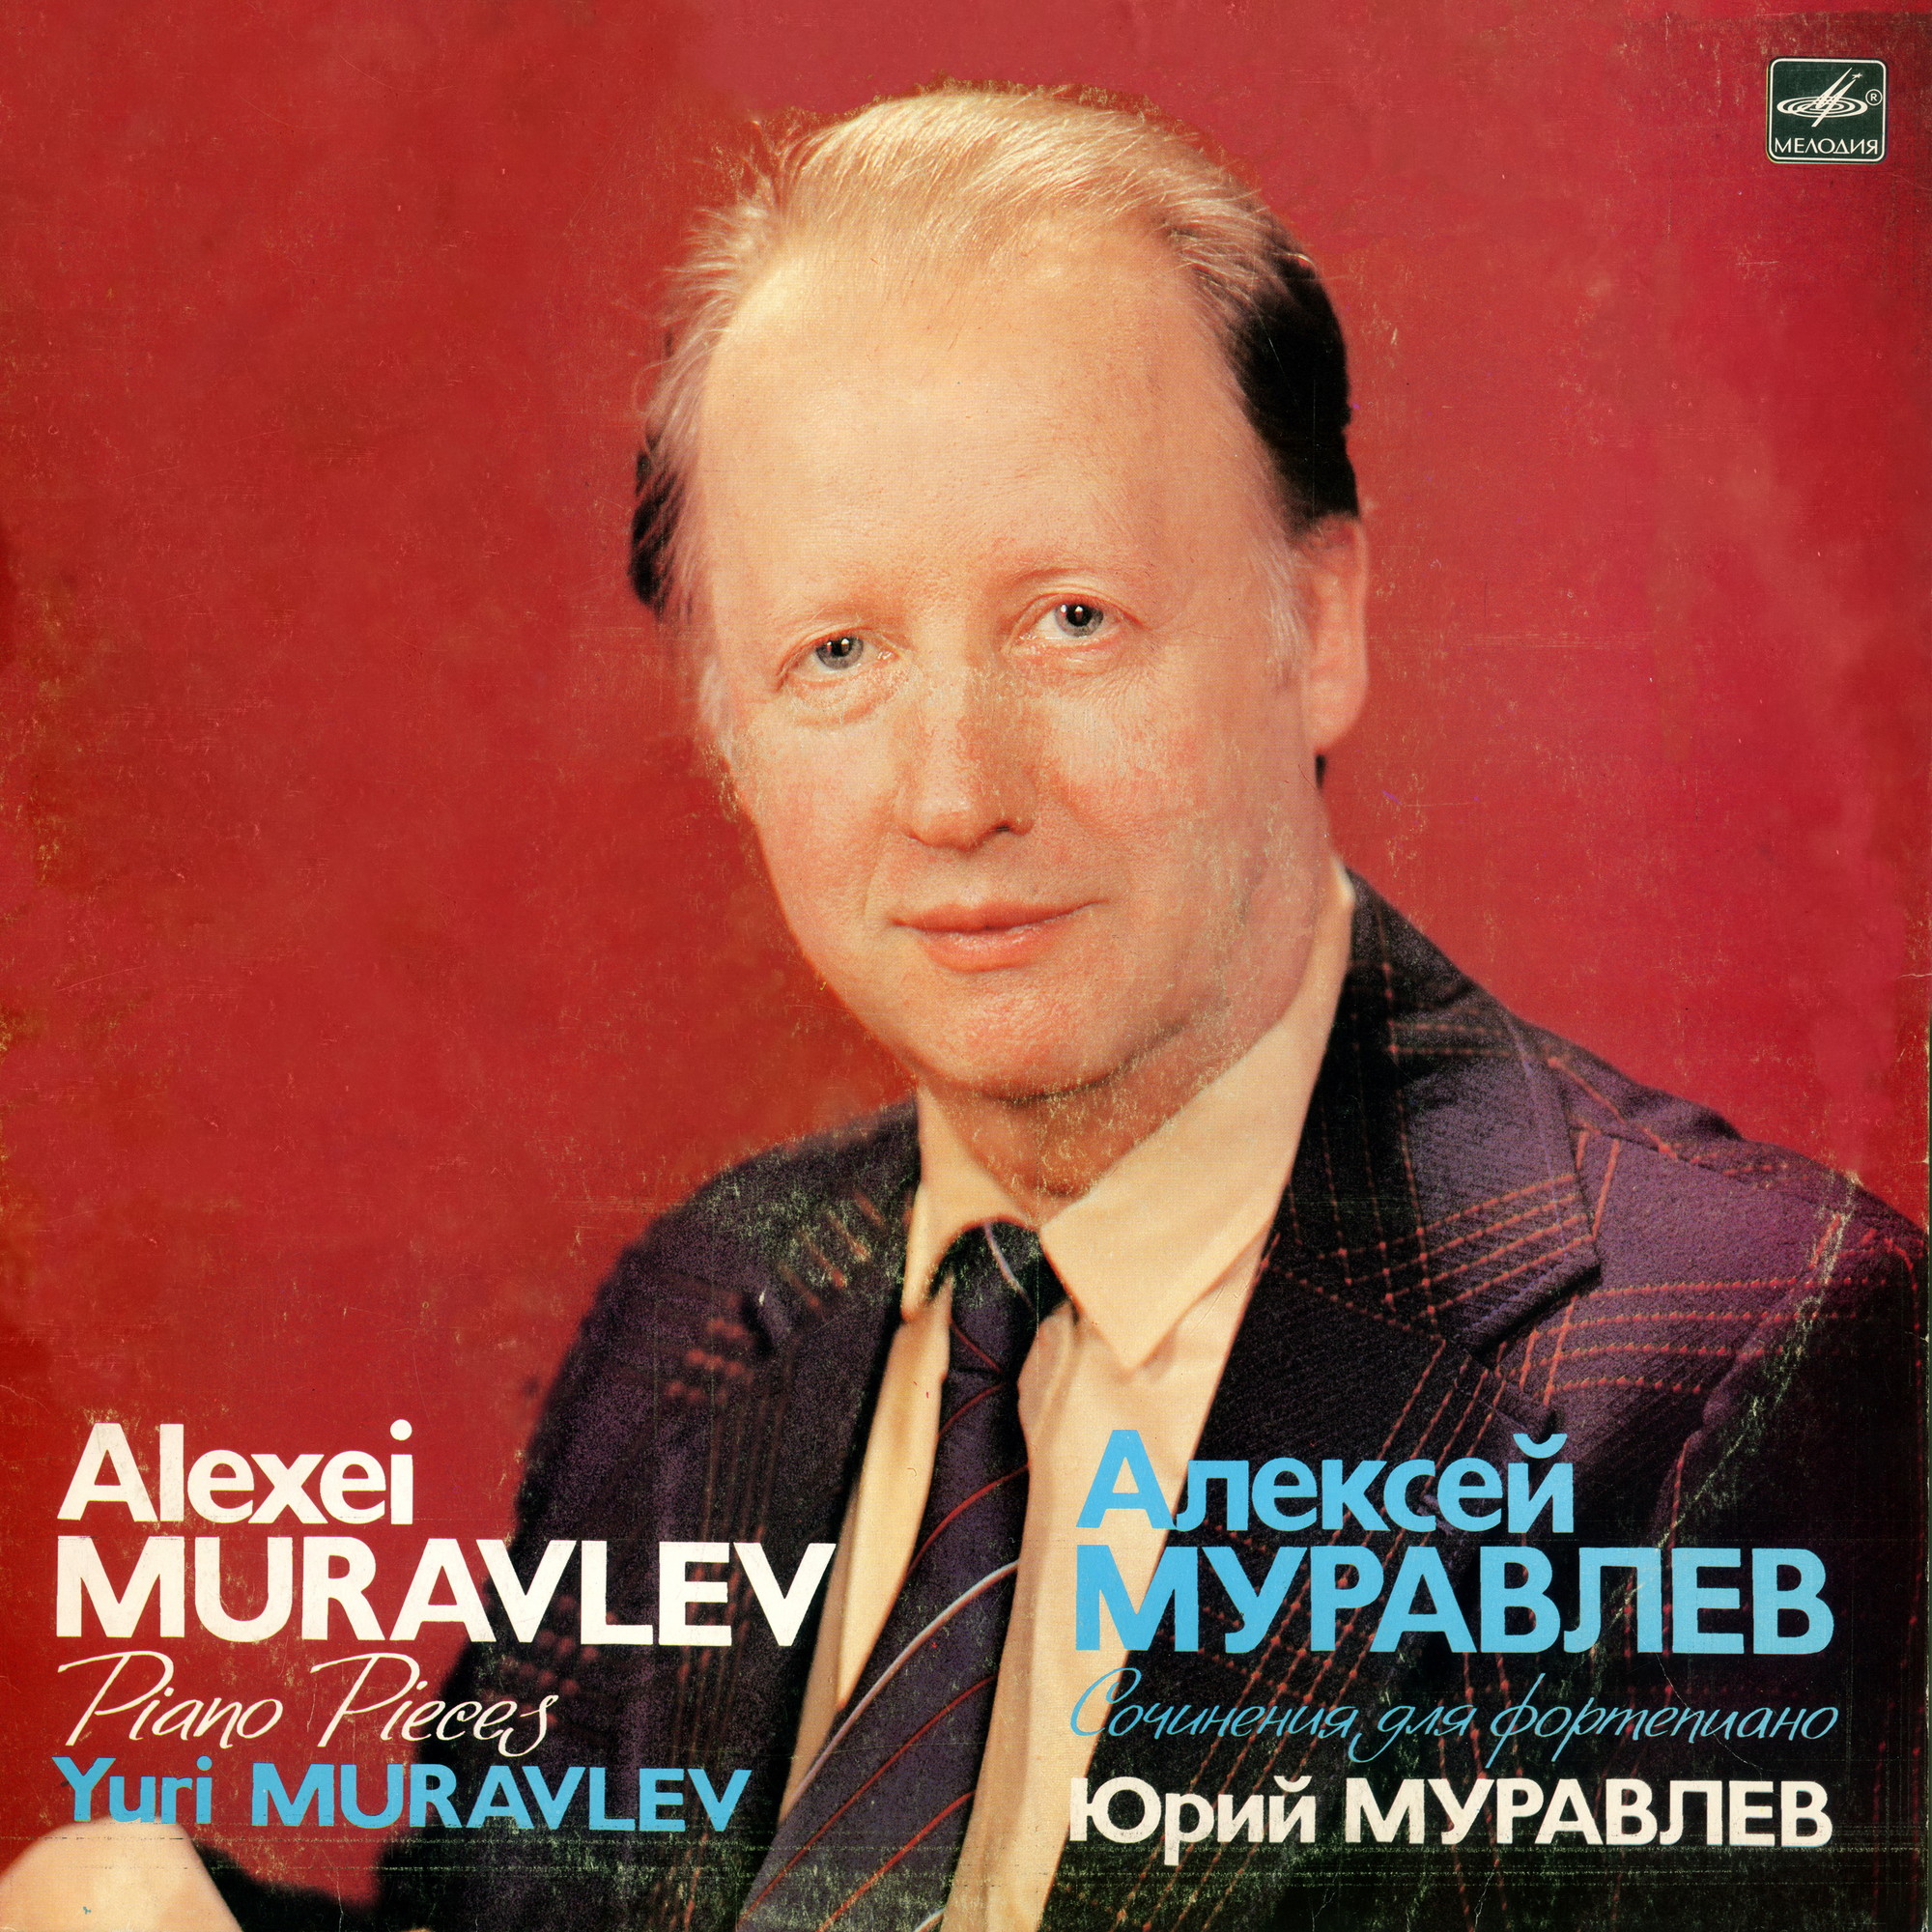 Алексей МУРАВЛЕВ (1924). Сочинения для фортепиано. Исполняет Юрий МУРАВЛЕВ